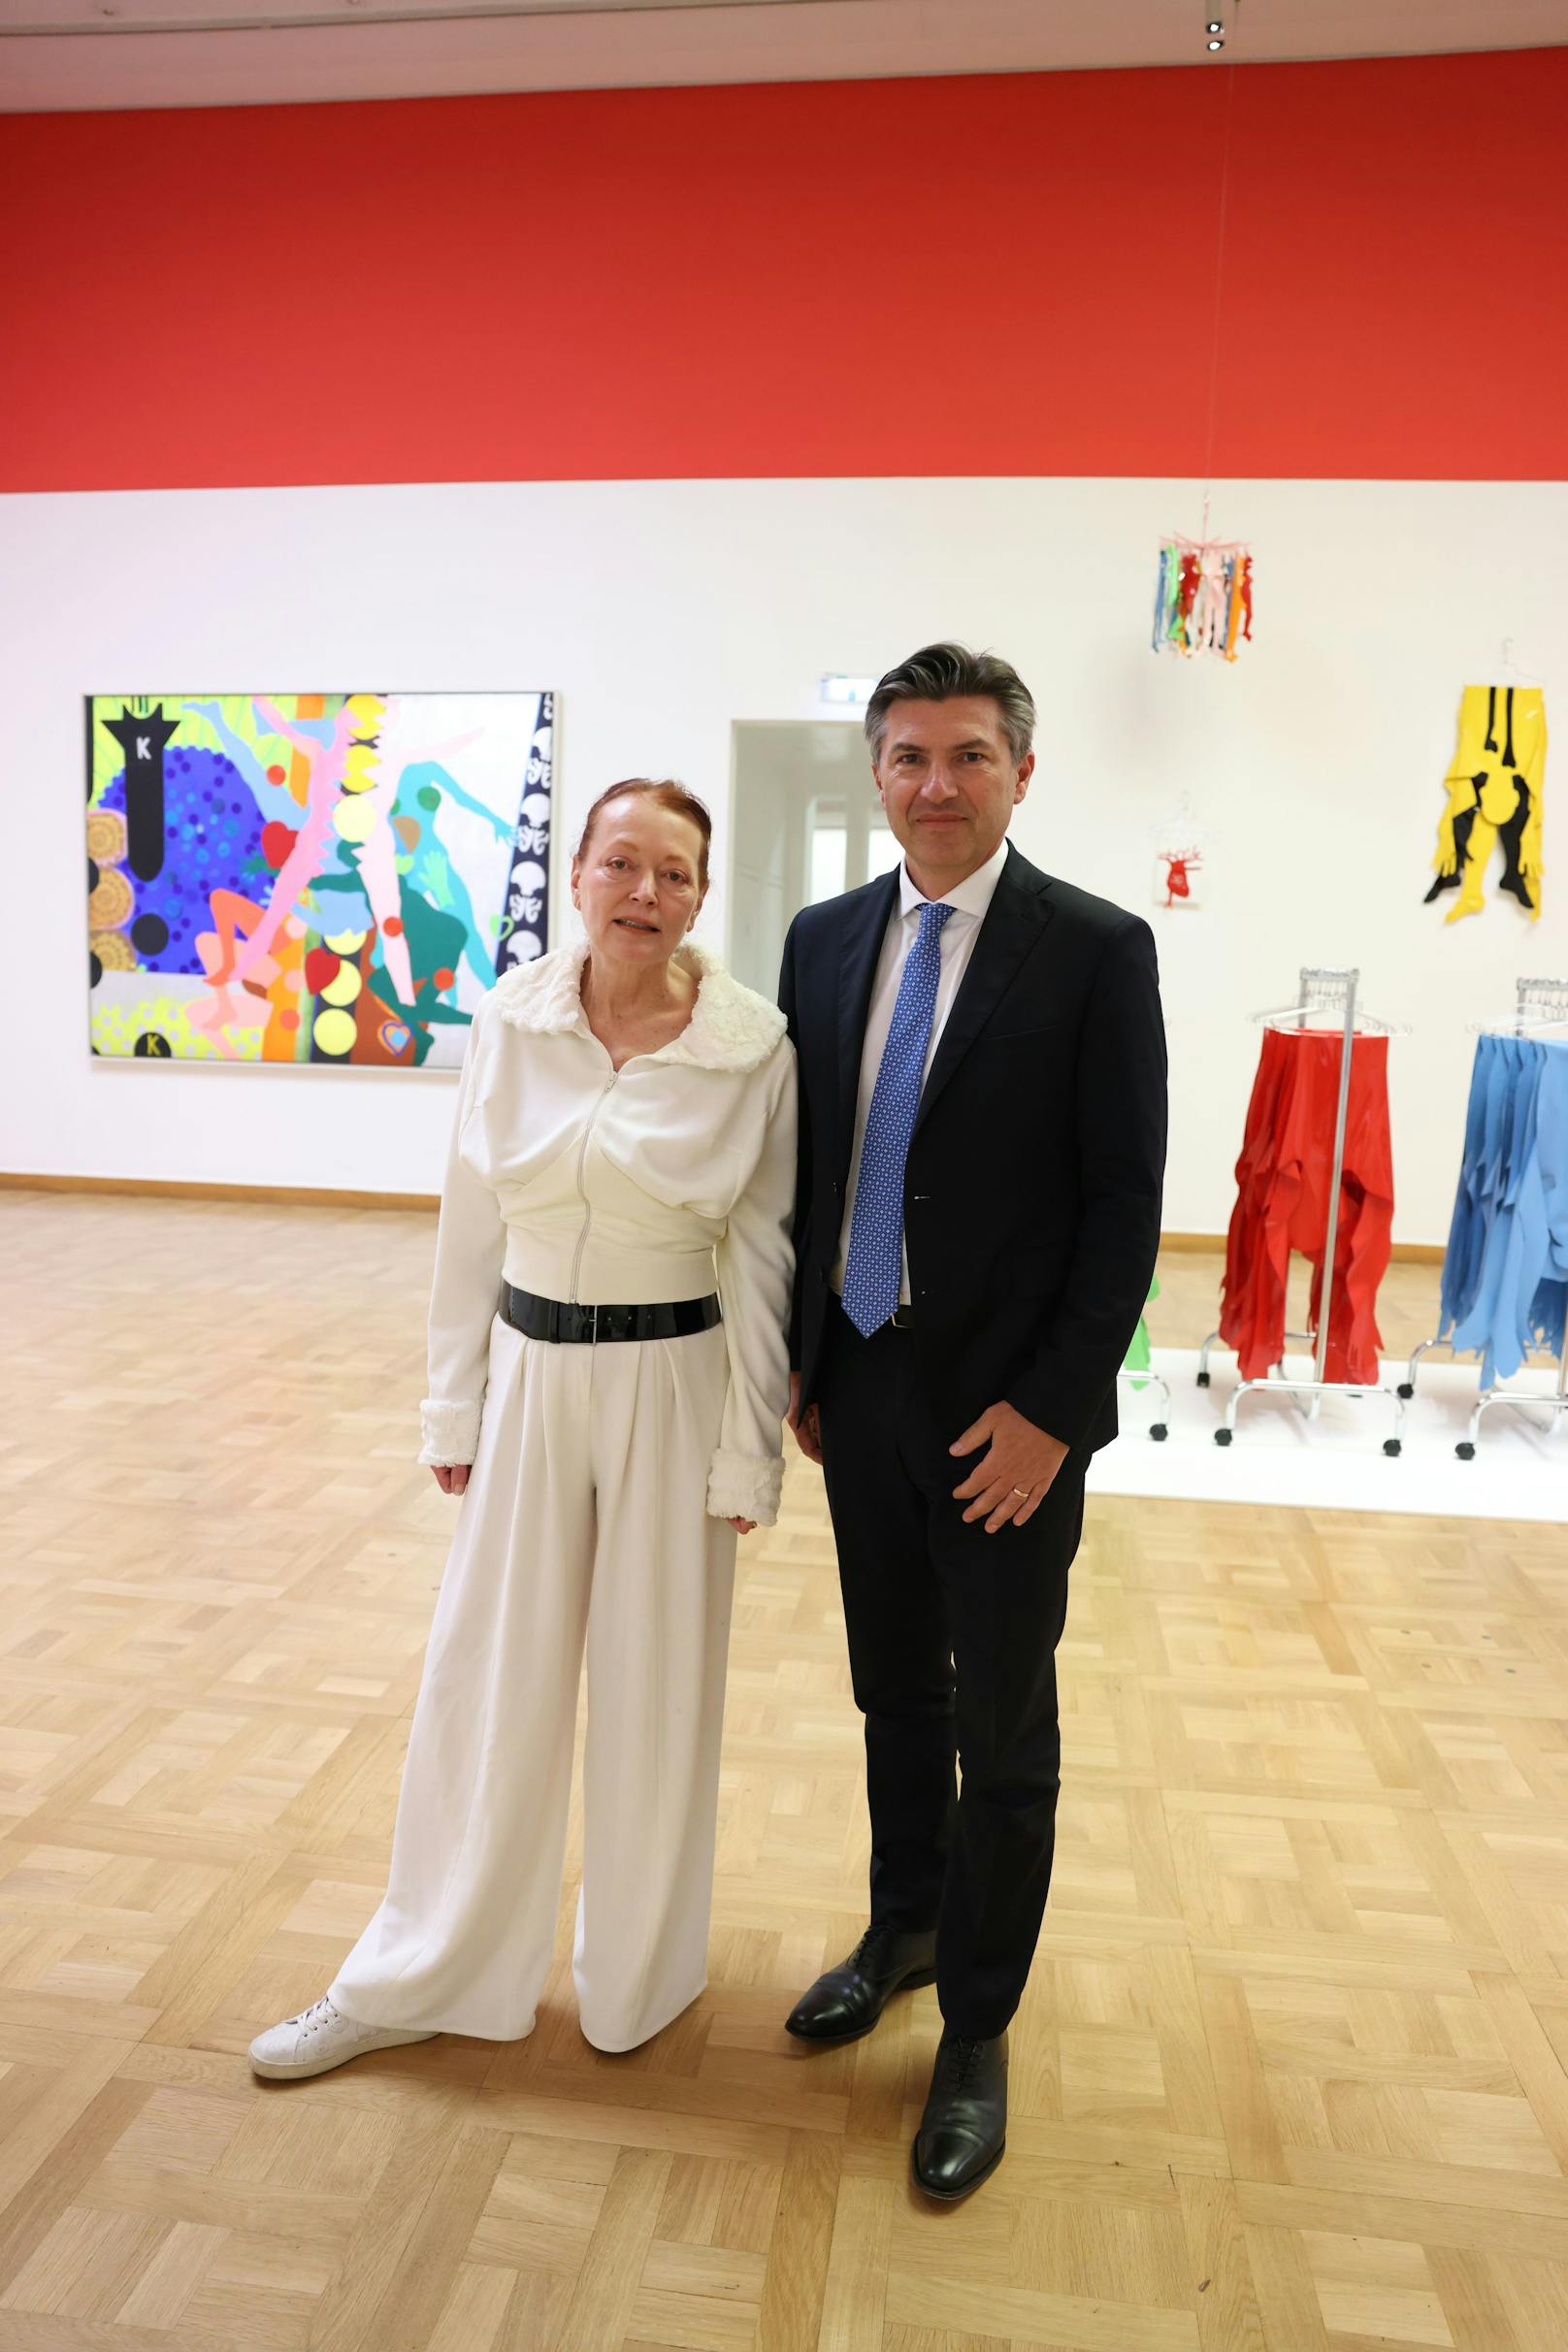 Die Direktorin des Bank Austria Kunstforums Wien Ingried Brugger und Bank Austria-Chef Robert Zadrazil bei der neuen Ausstellung im Kunstforum.